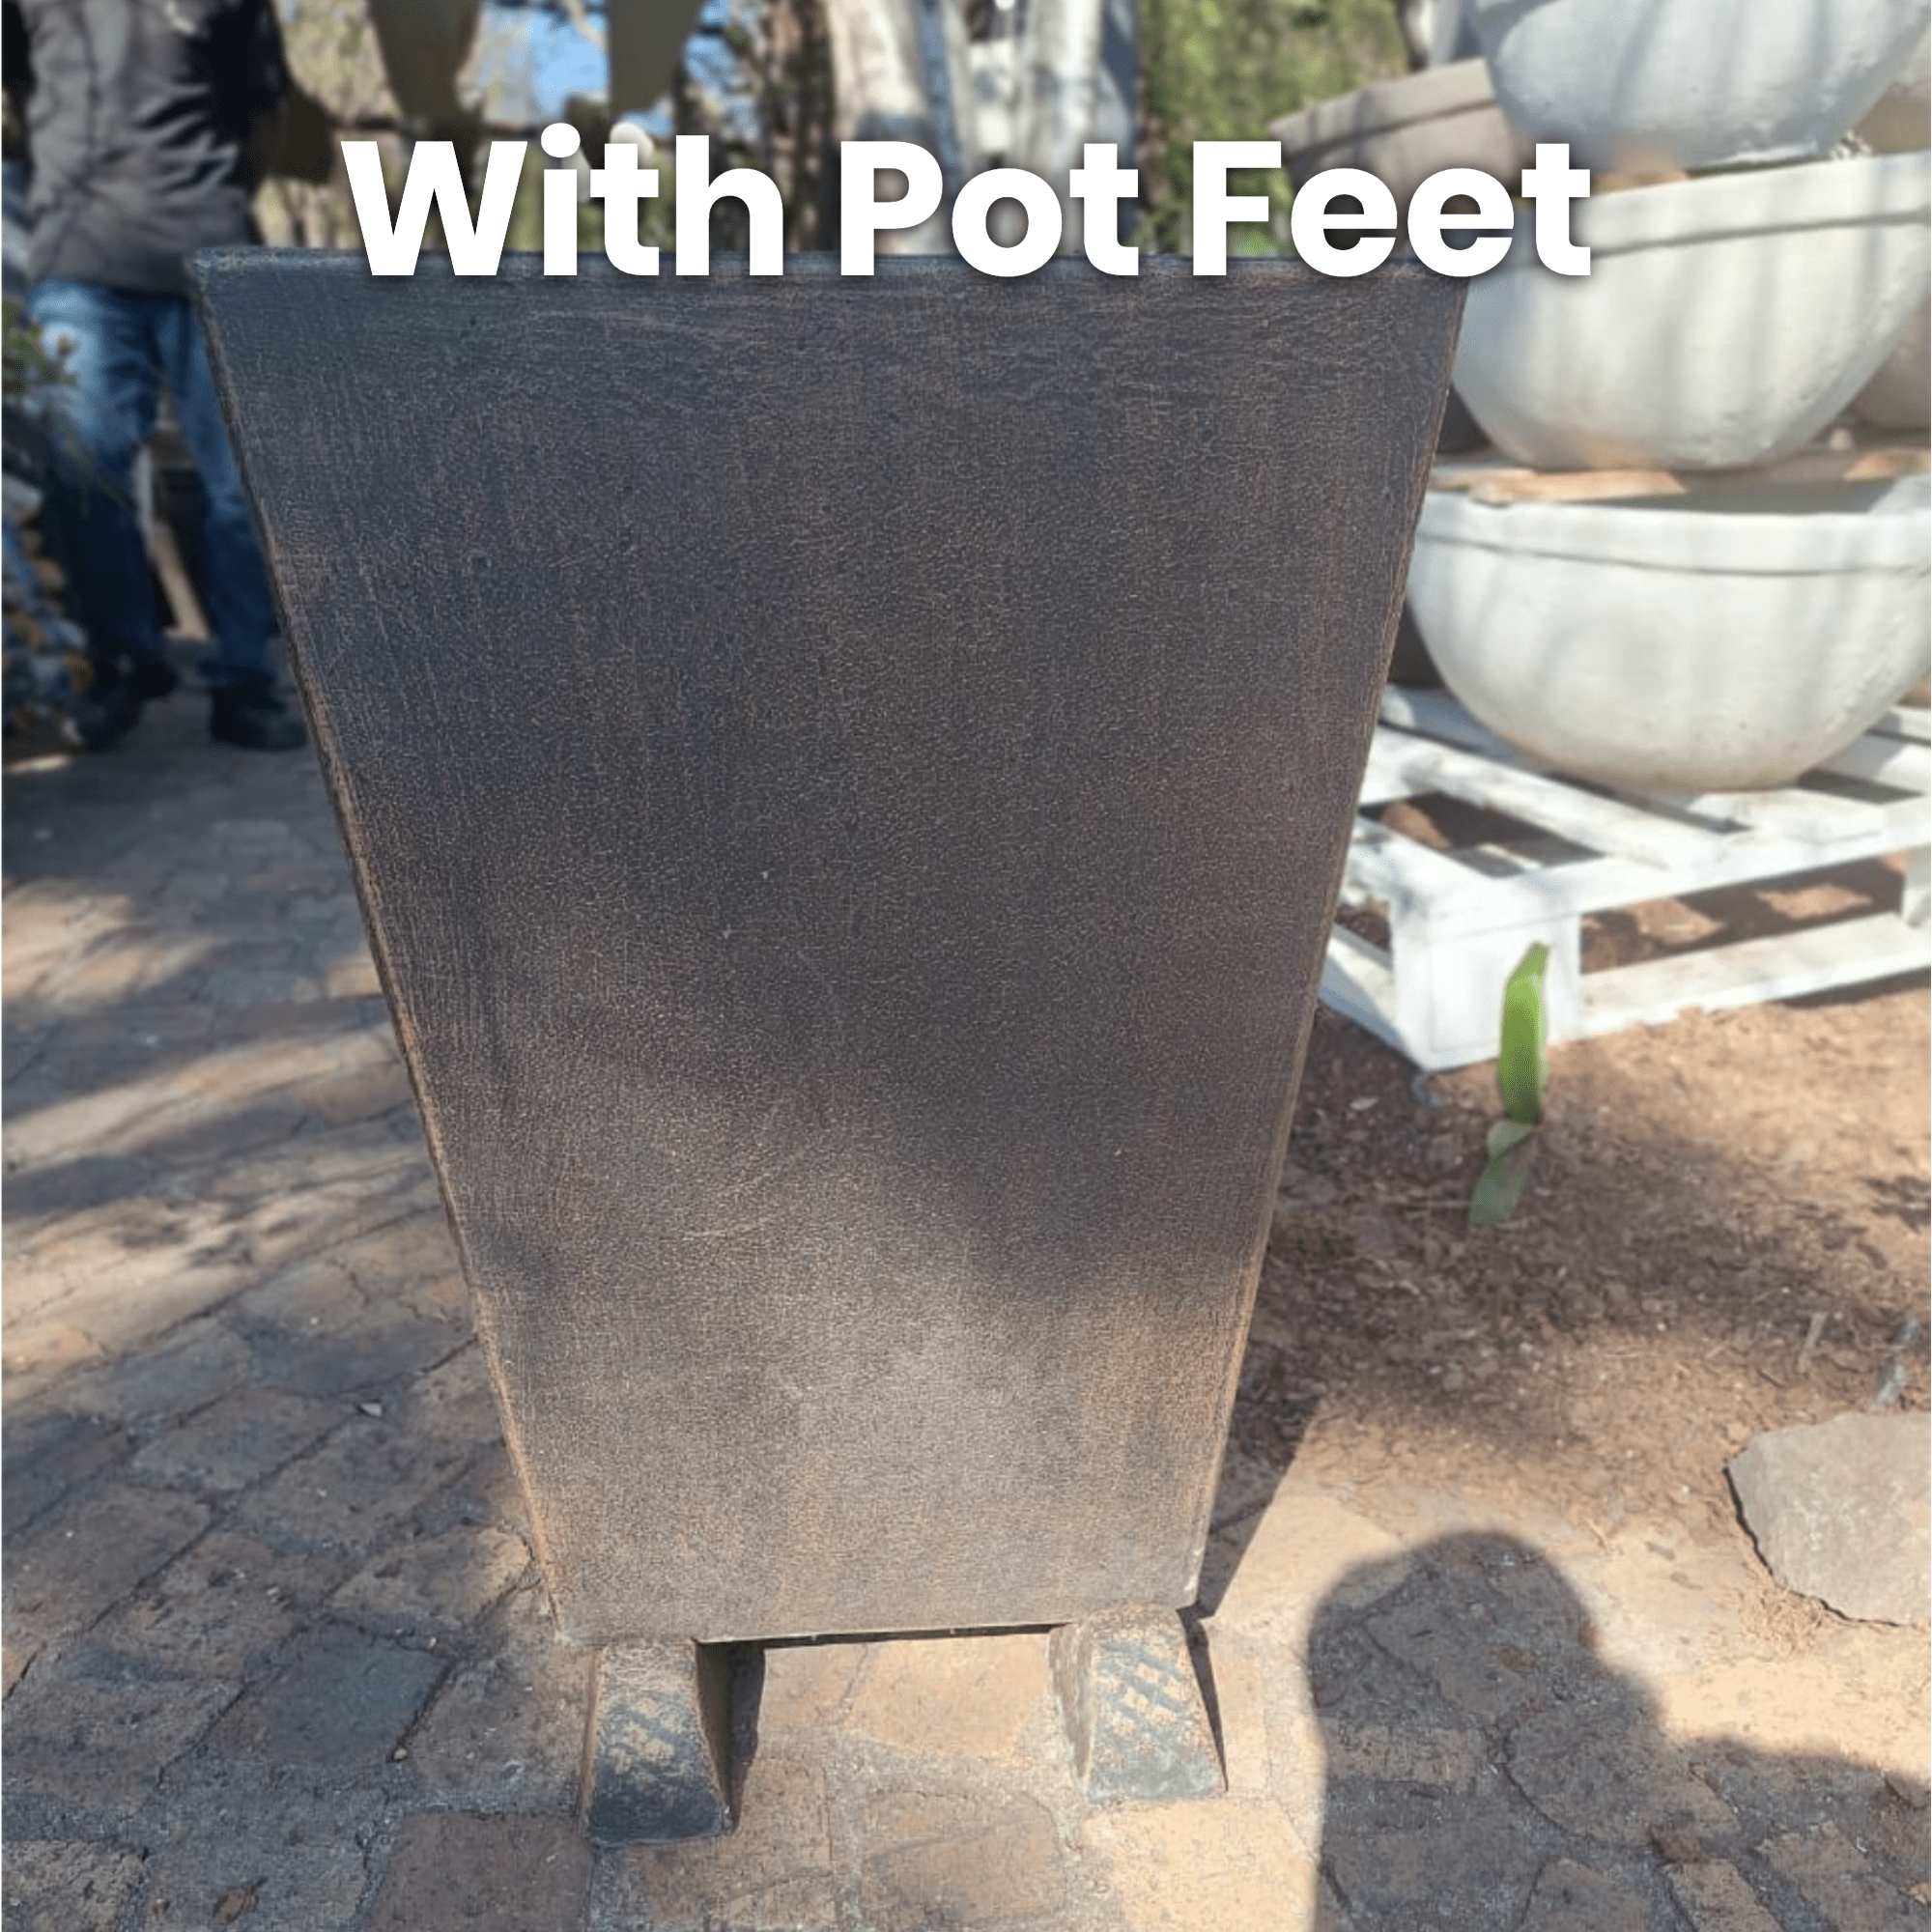 Premium Windsor Plant Pot The Pot Shack Gauteng Concrete Pot